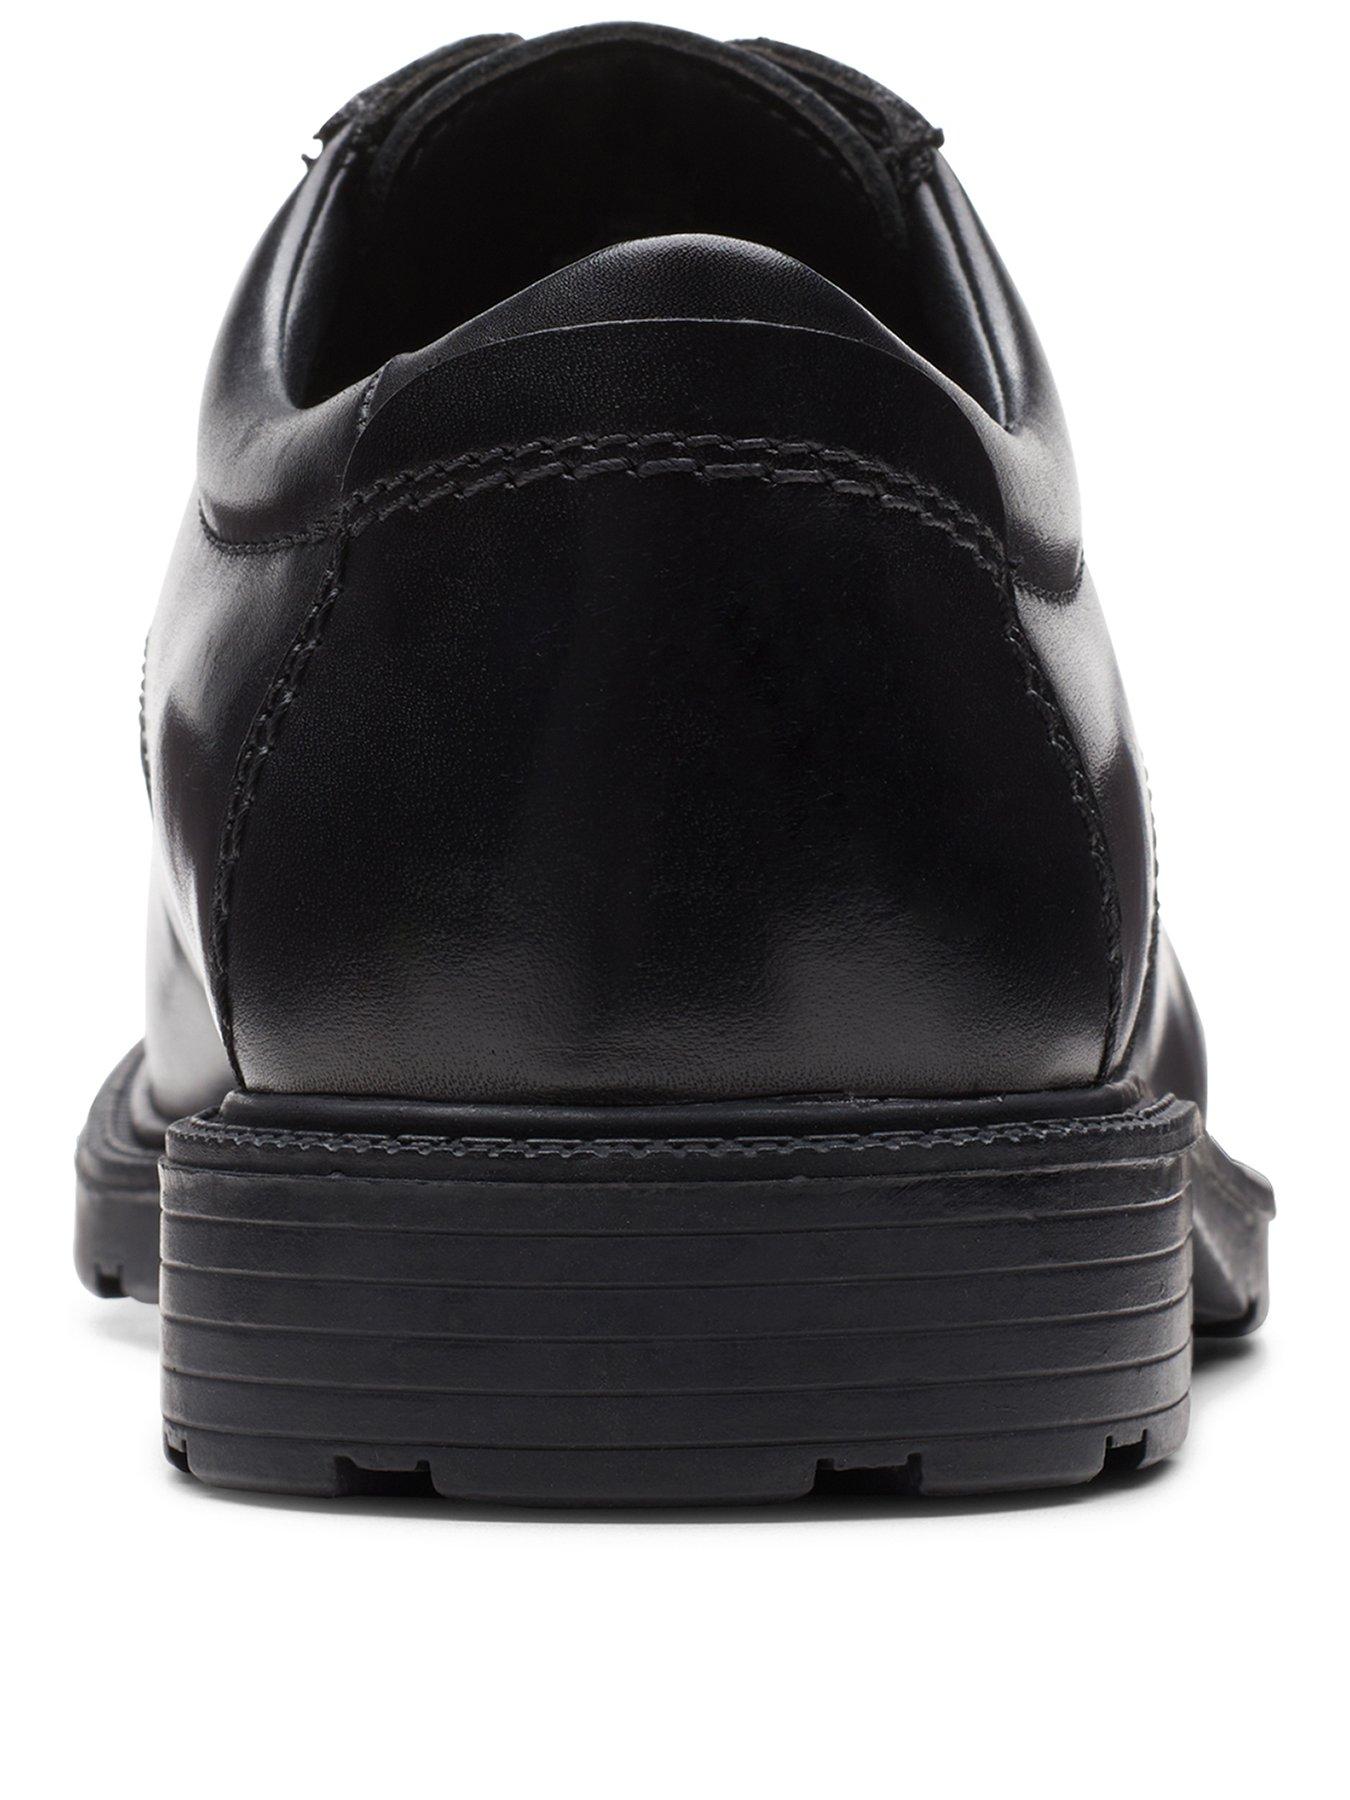 Clarks Kerton Lace Derby Shoes - Black | littlewoods.com